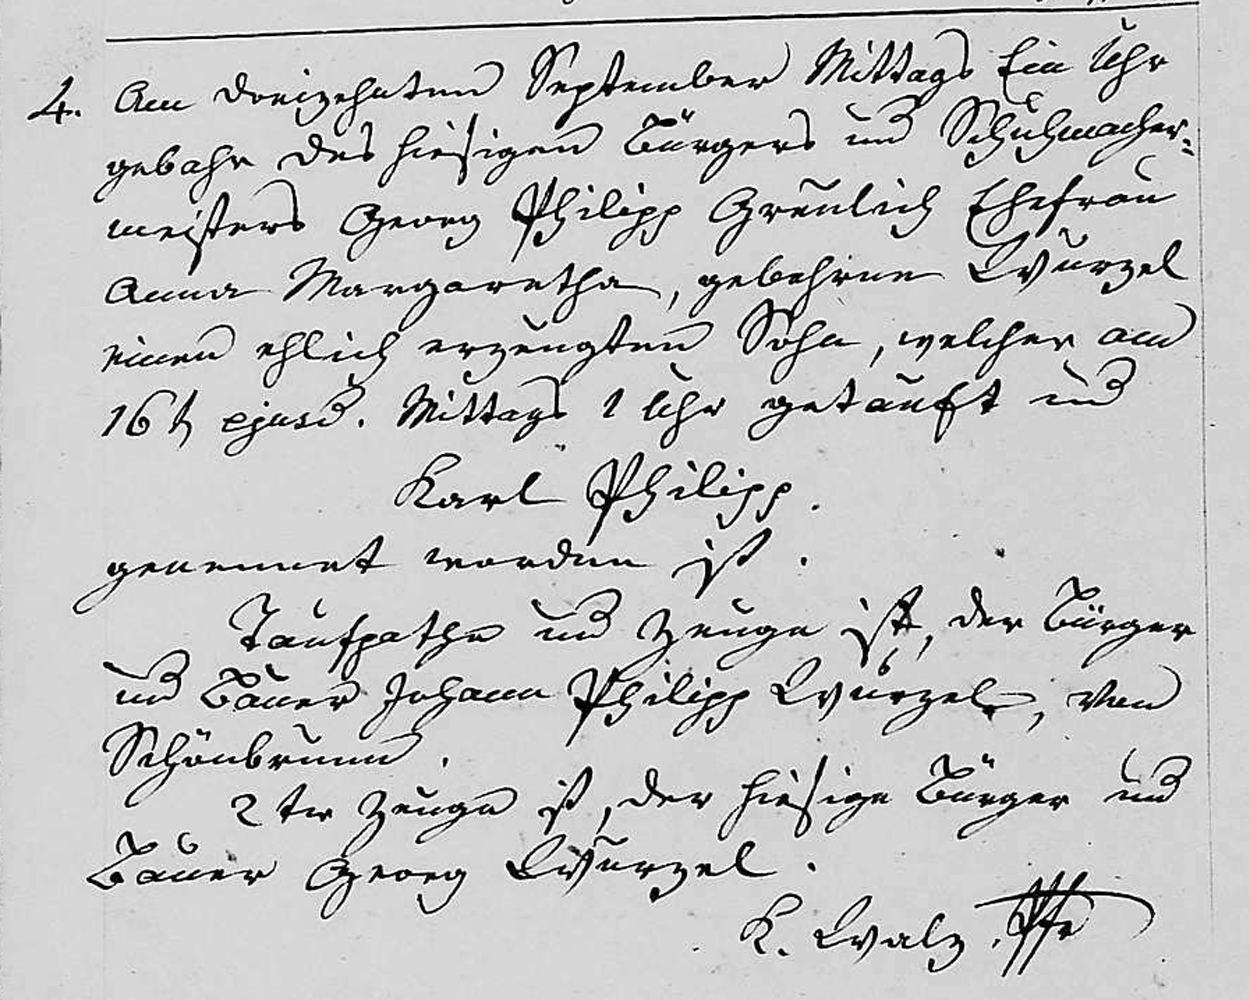 1838 Karl Philip Greulich birth record